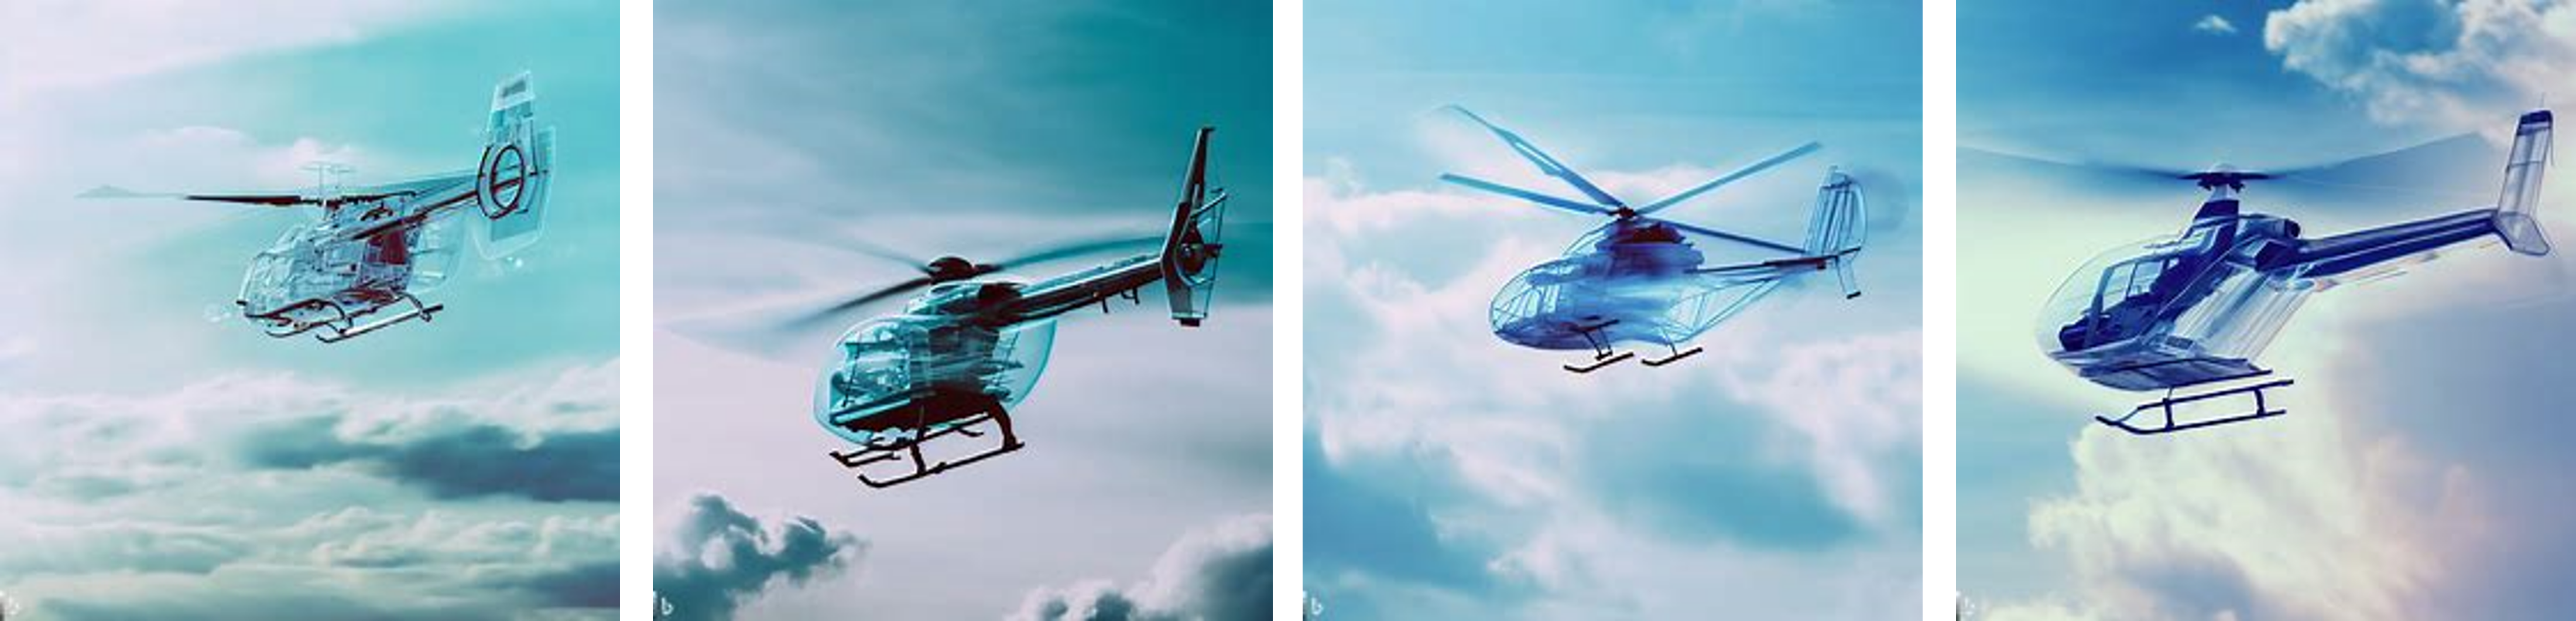 투명 헬리콥터, flying in the sky